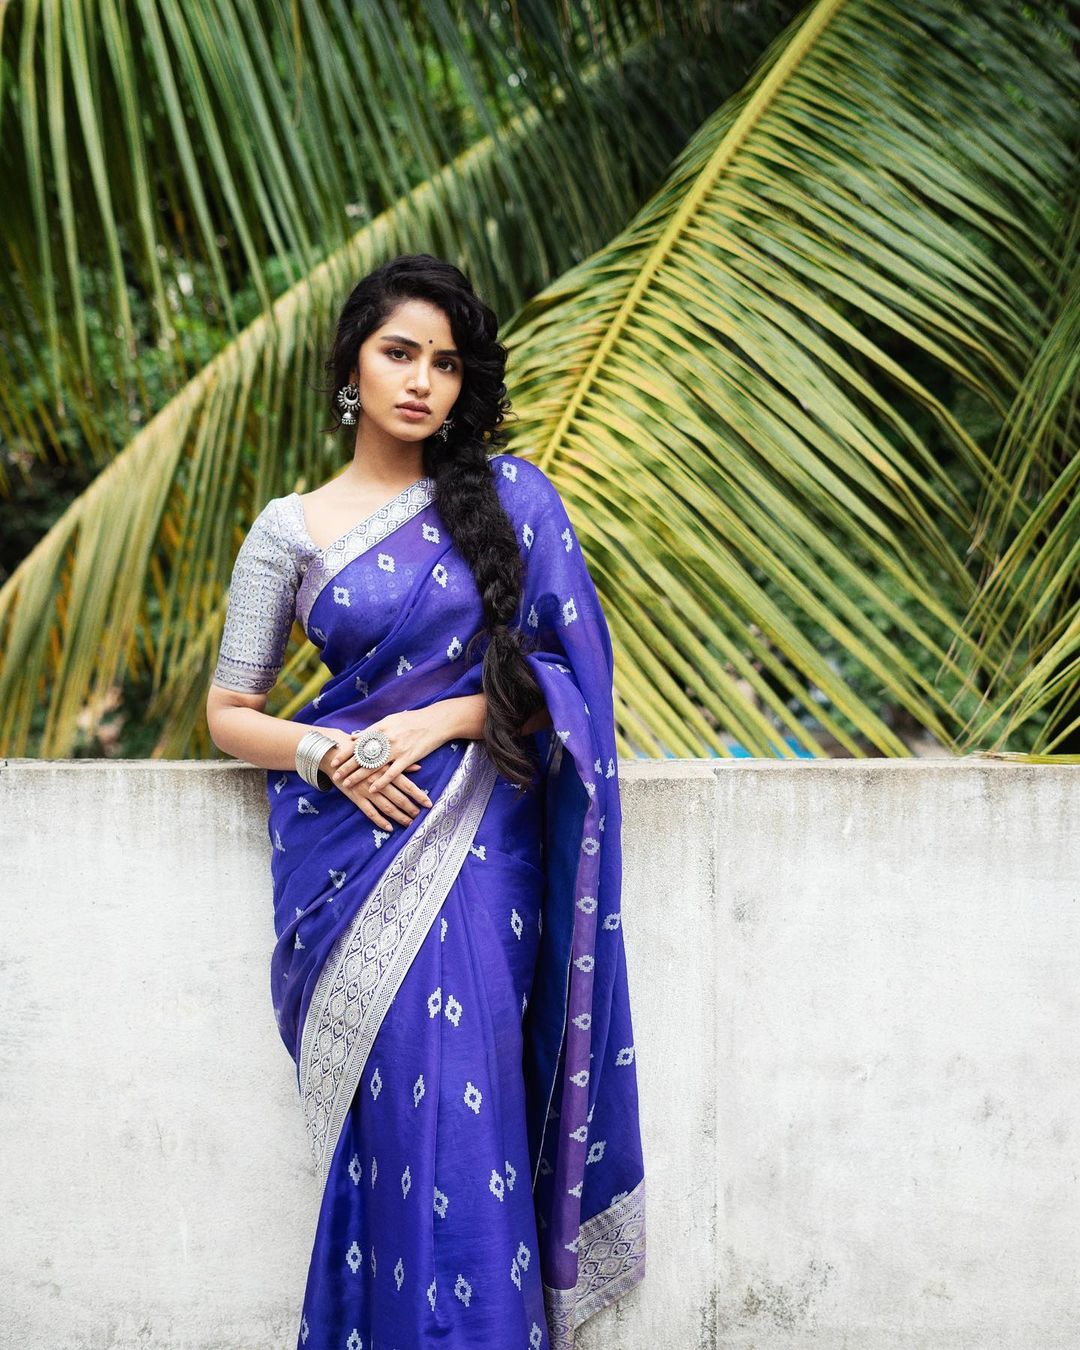 Anupama Parameswaran Look  Simple And Beautiful In Blue Saree Outfit